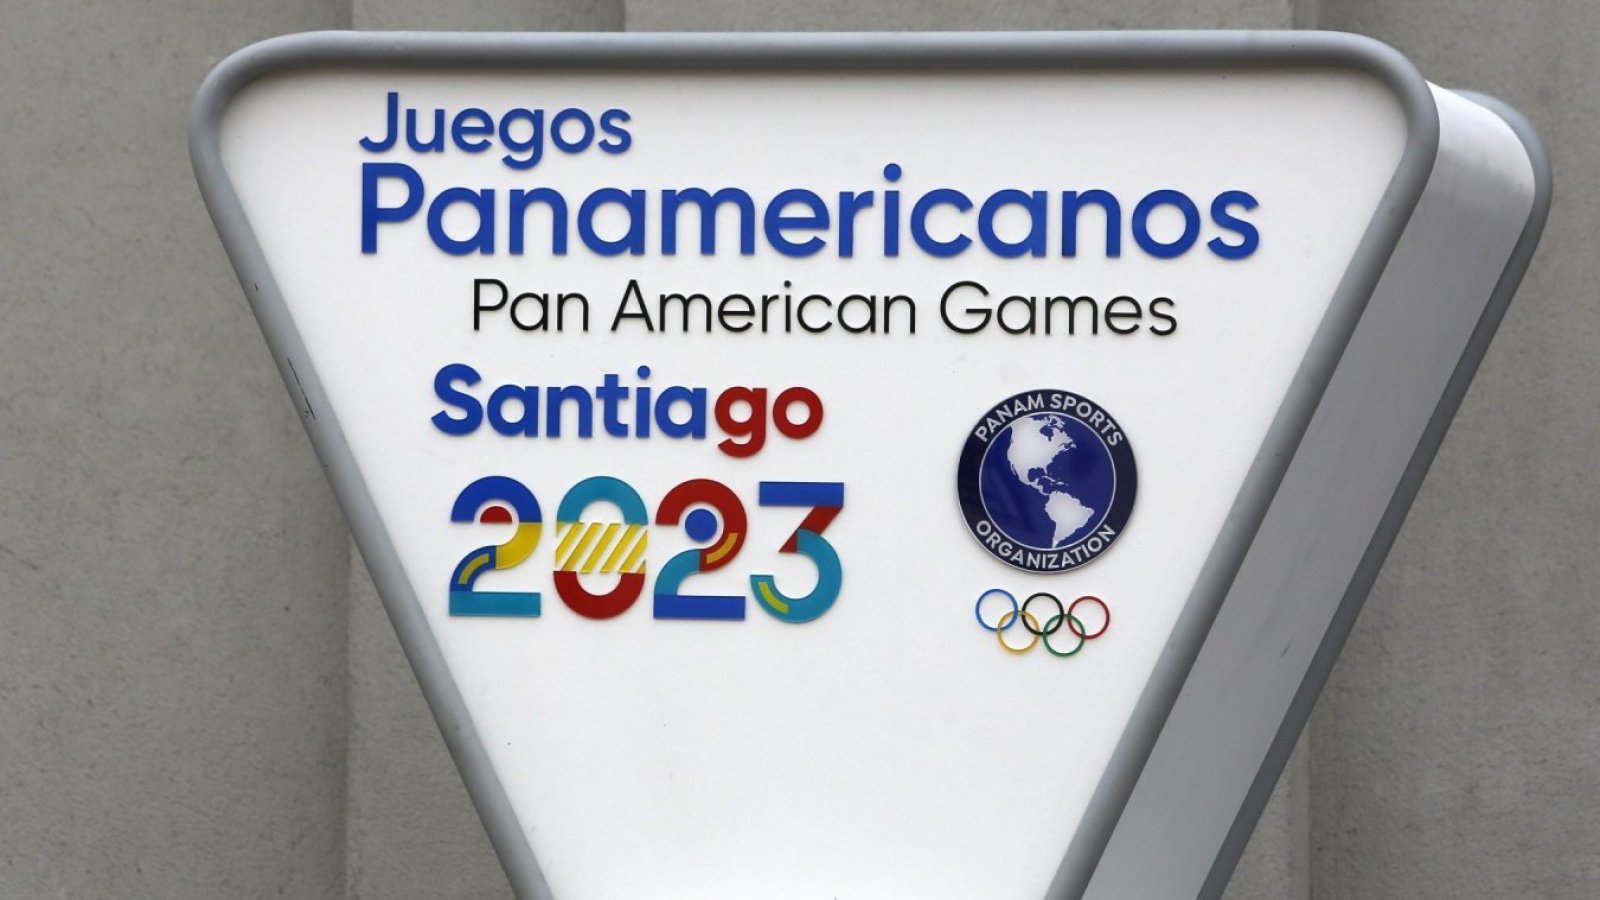 Cuándo inician los Juegos Panamericanos Santiago 2023?